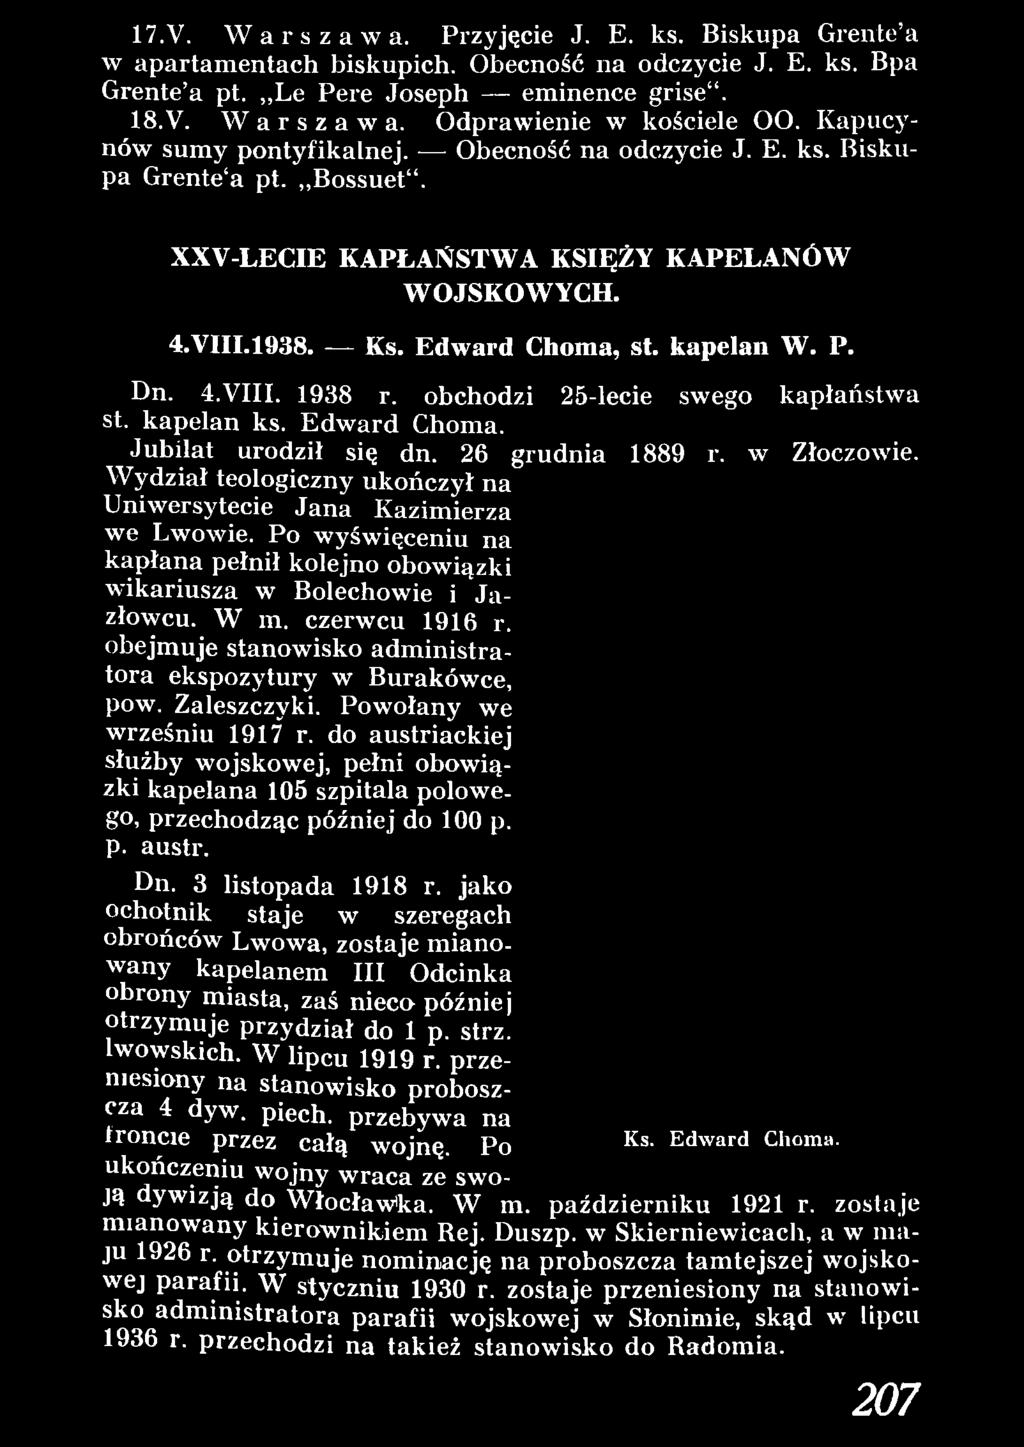 obejm uje stanowisko adm inistratora ekspozytury w Burakówce, pow. Zaleszczyki. Powołany we wrześniu 1917 r.